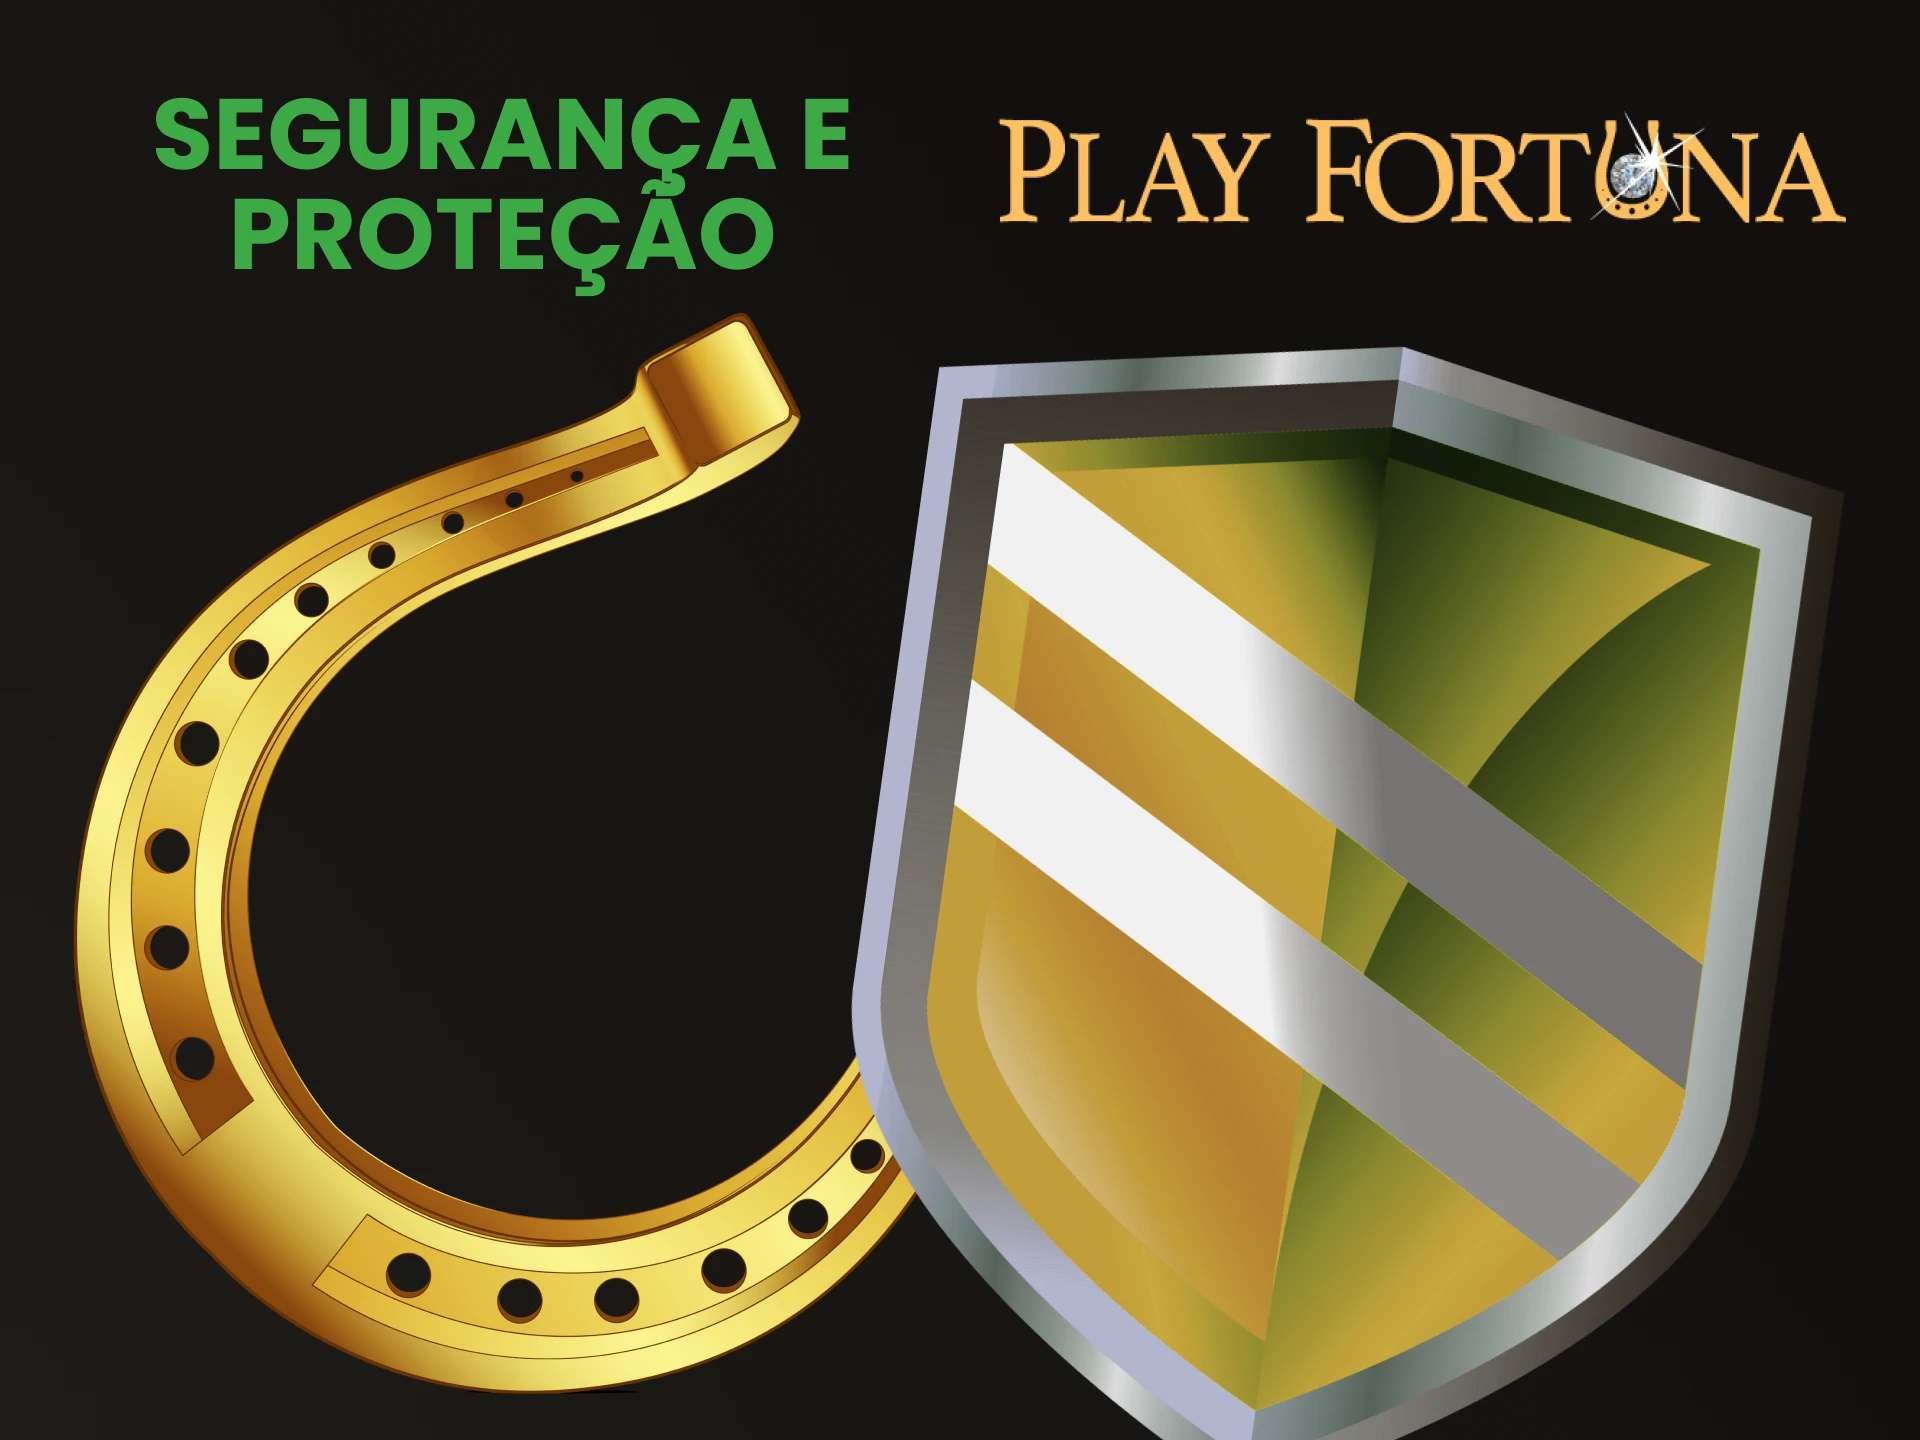 Play Fortuna possui forte segurança para seu site.